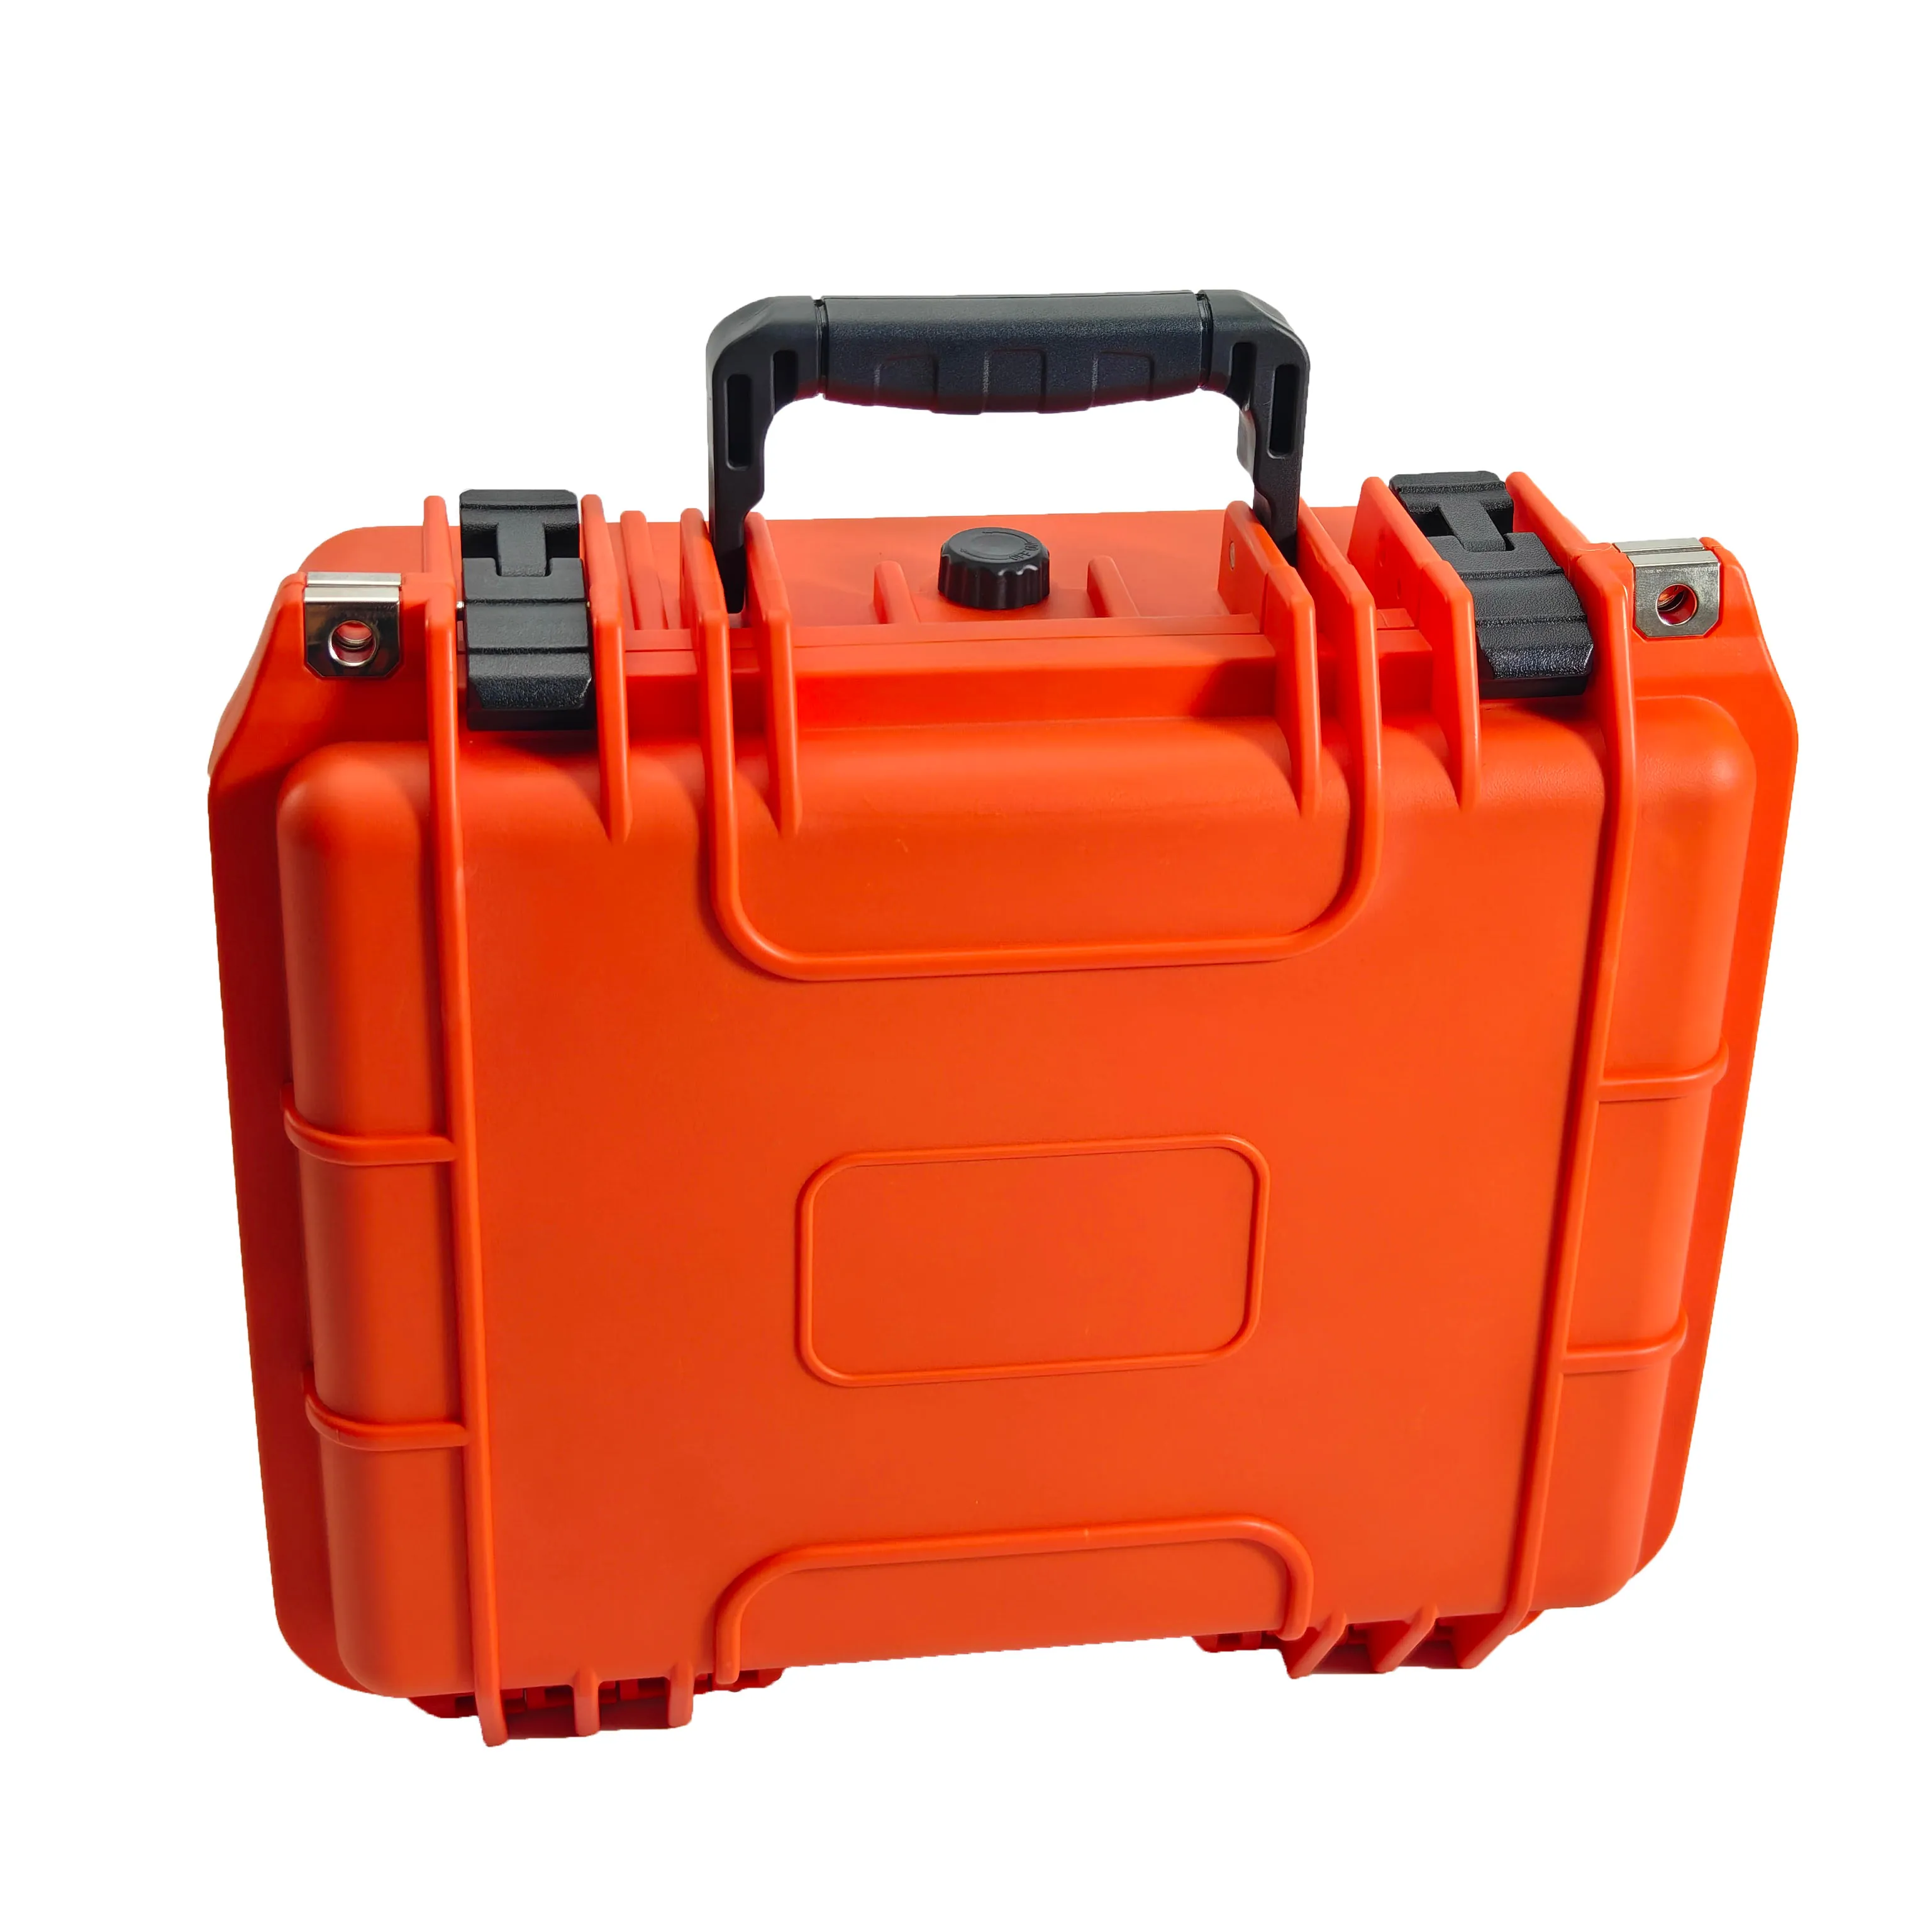 オレンジ色IP67防水防塵耐衝撃ツールボックスポータブル硬質プラスチックケース